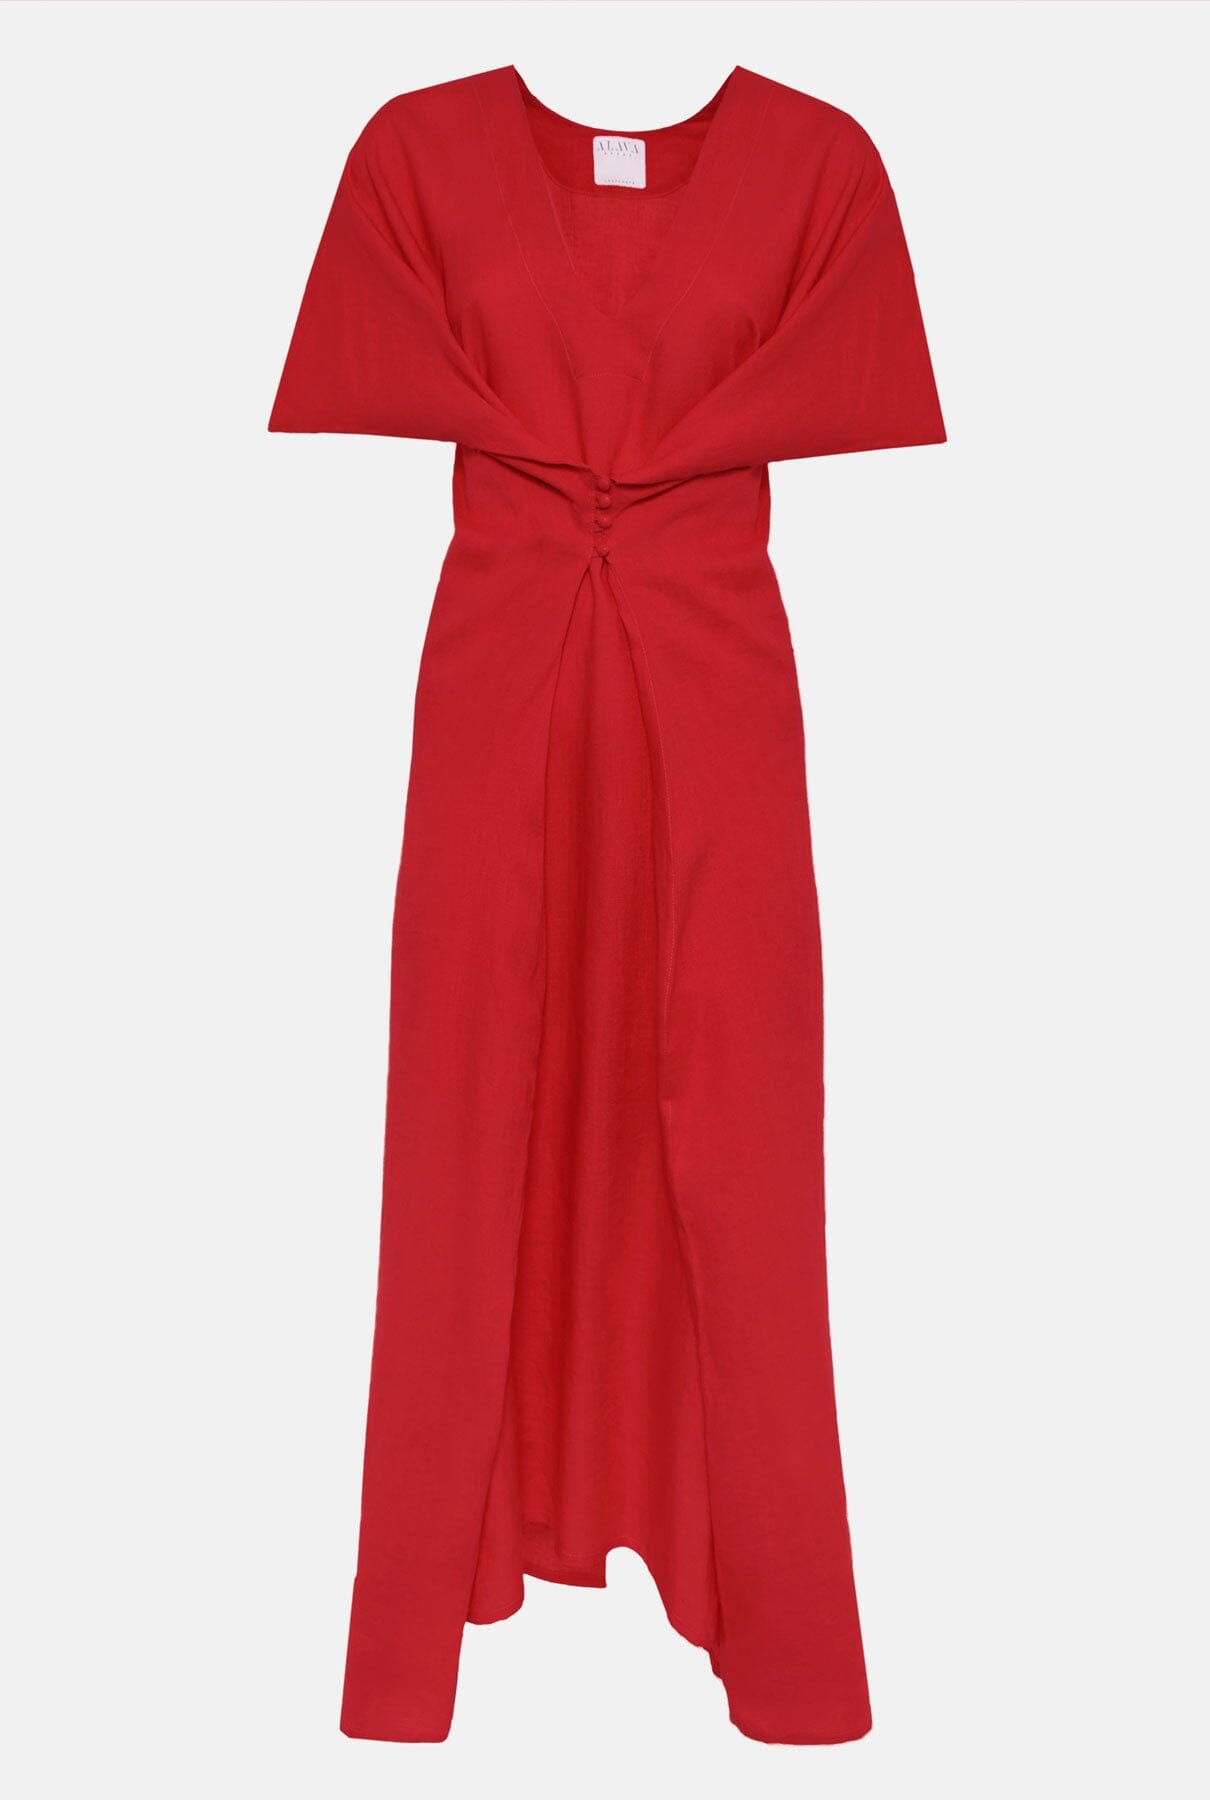 Uga Dress Red Dresses Alava Brand 